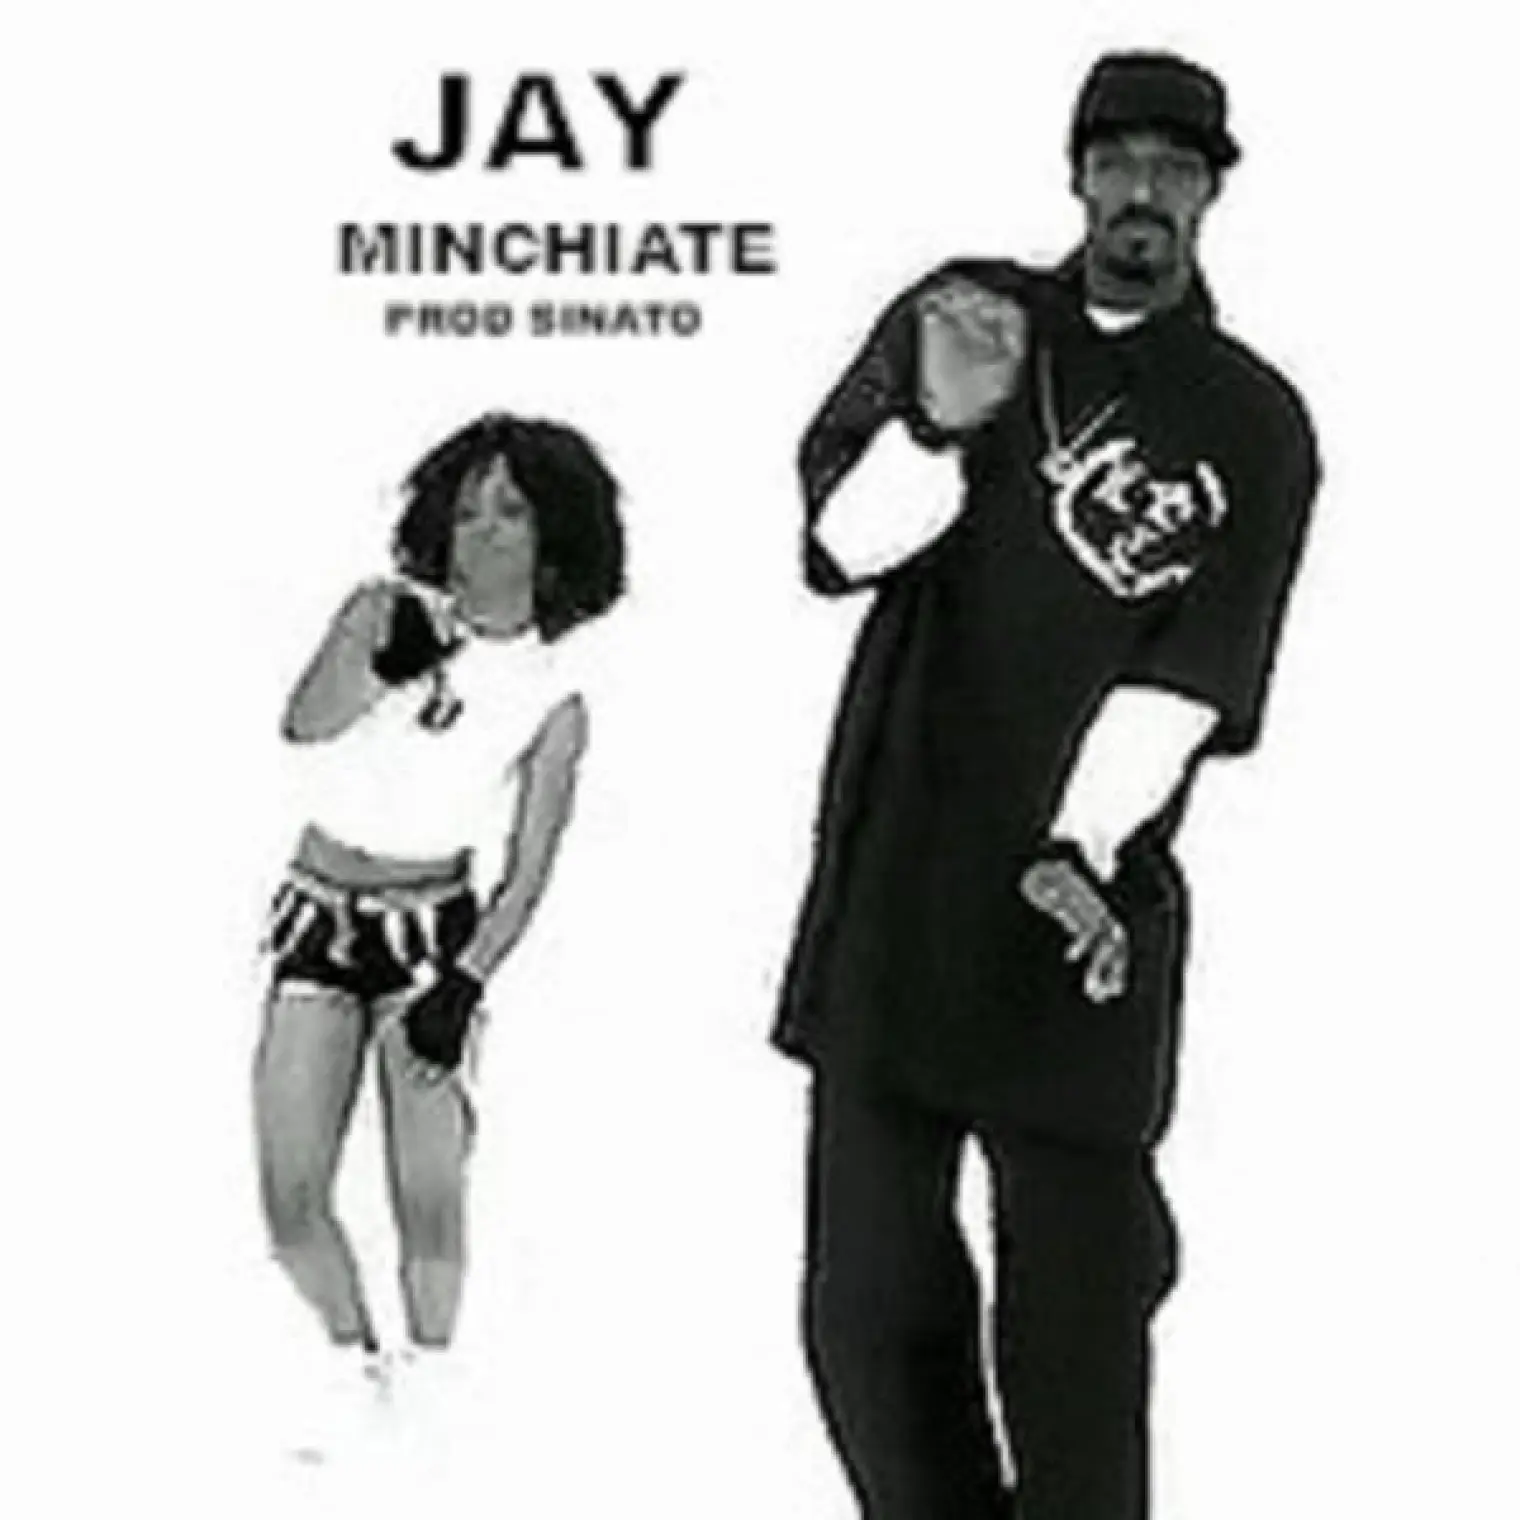 Minchiate -  Jay 